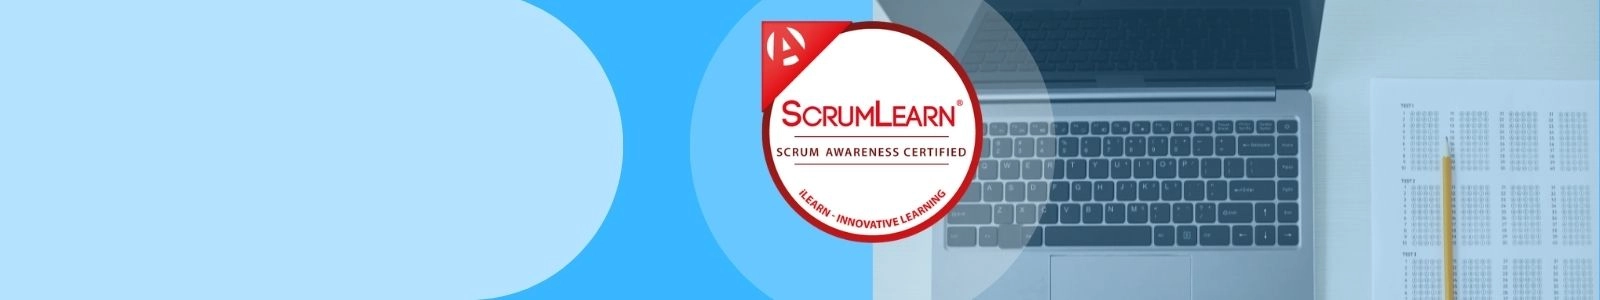 Certificati Scrum Awareness Certified GRATUITAMENTE!